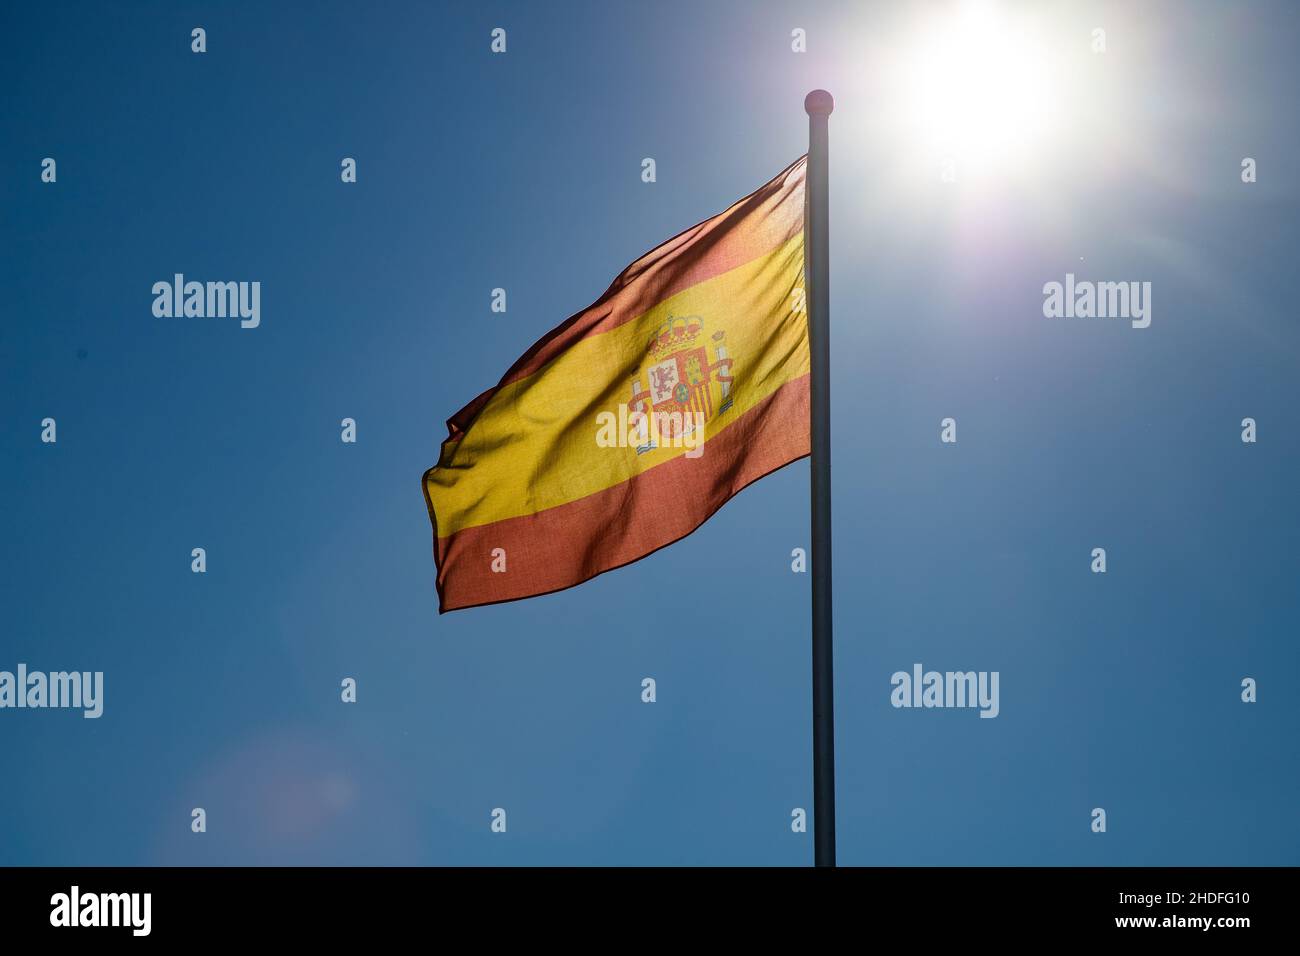 drapeau espagnol sur fond bleu Banque D'Images